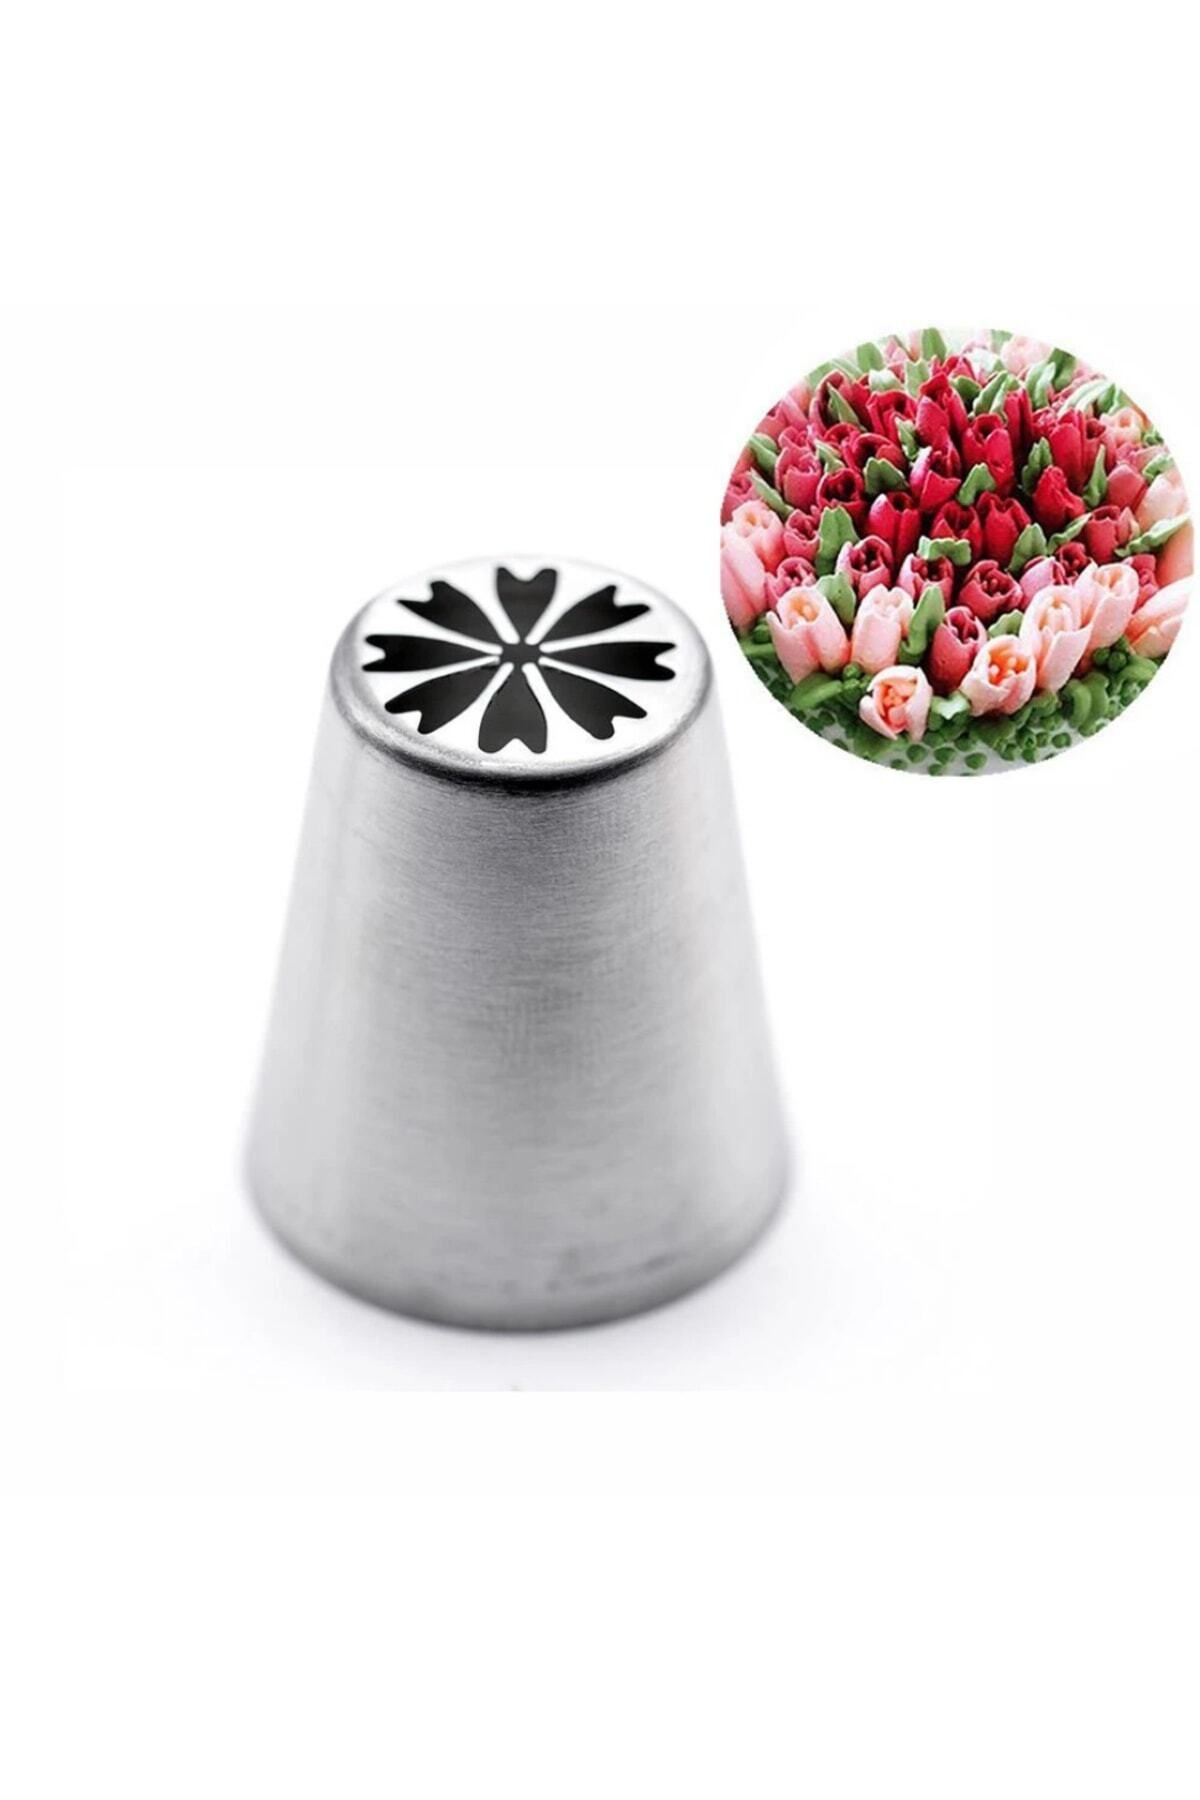 adin tasarım Rus Duyu Çiçek Çiçek Yapım Duyu Yonca Krema Sıkma Torbası Ucu Pasta Krema Şekillendirici